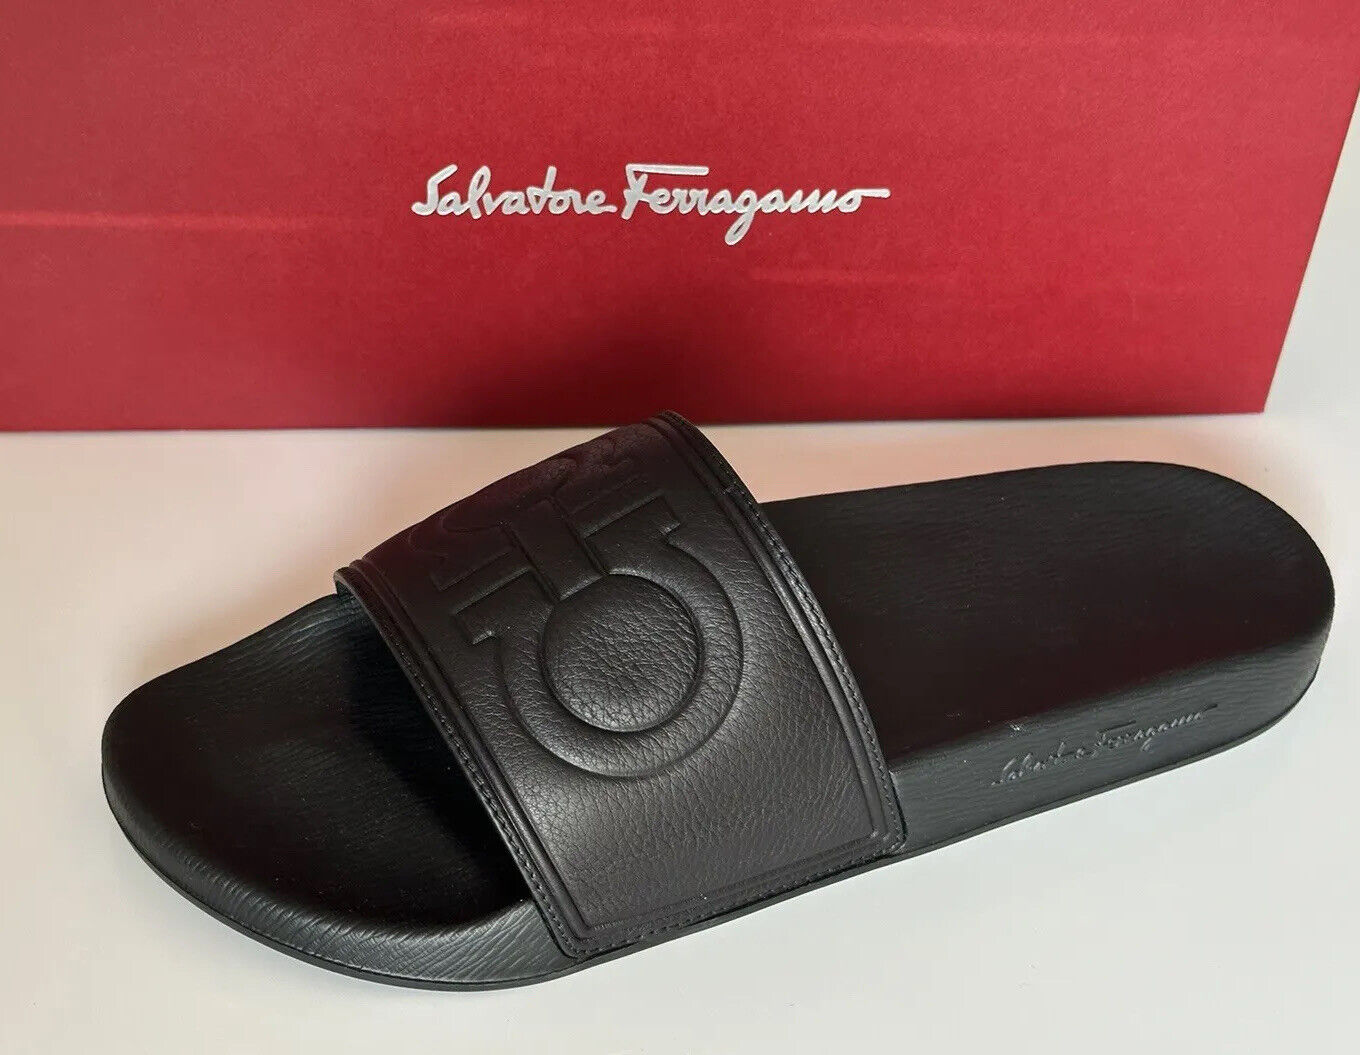 Мужские черные резиновые сандалии Salvatore Ferragamo за 330 долларов США ТОЛЬКО ДЛЯ ЛЕВОЙ НОГИ 10 шт. США